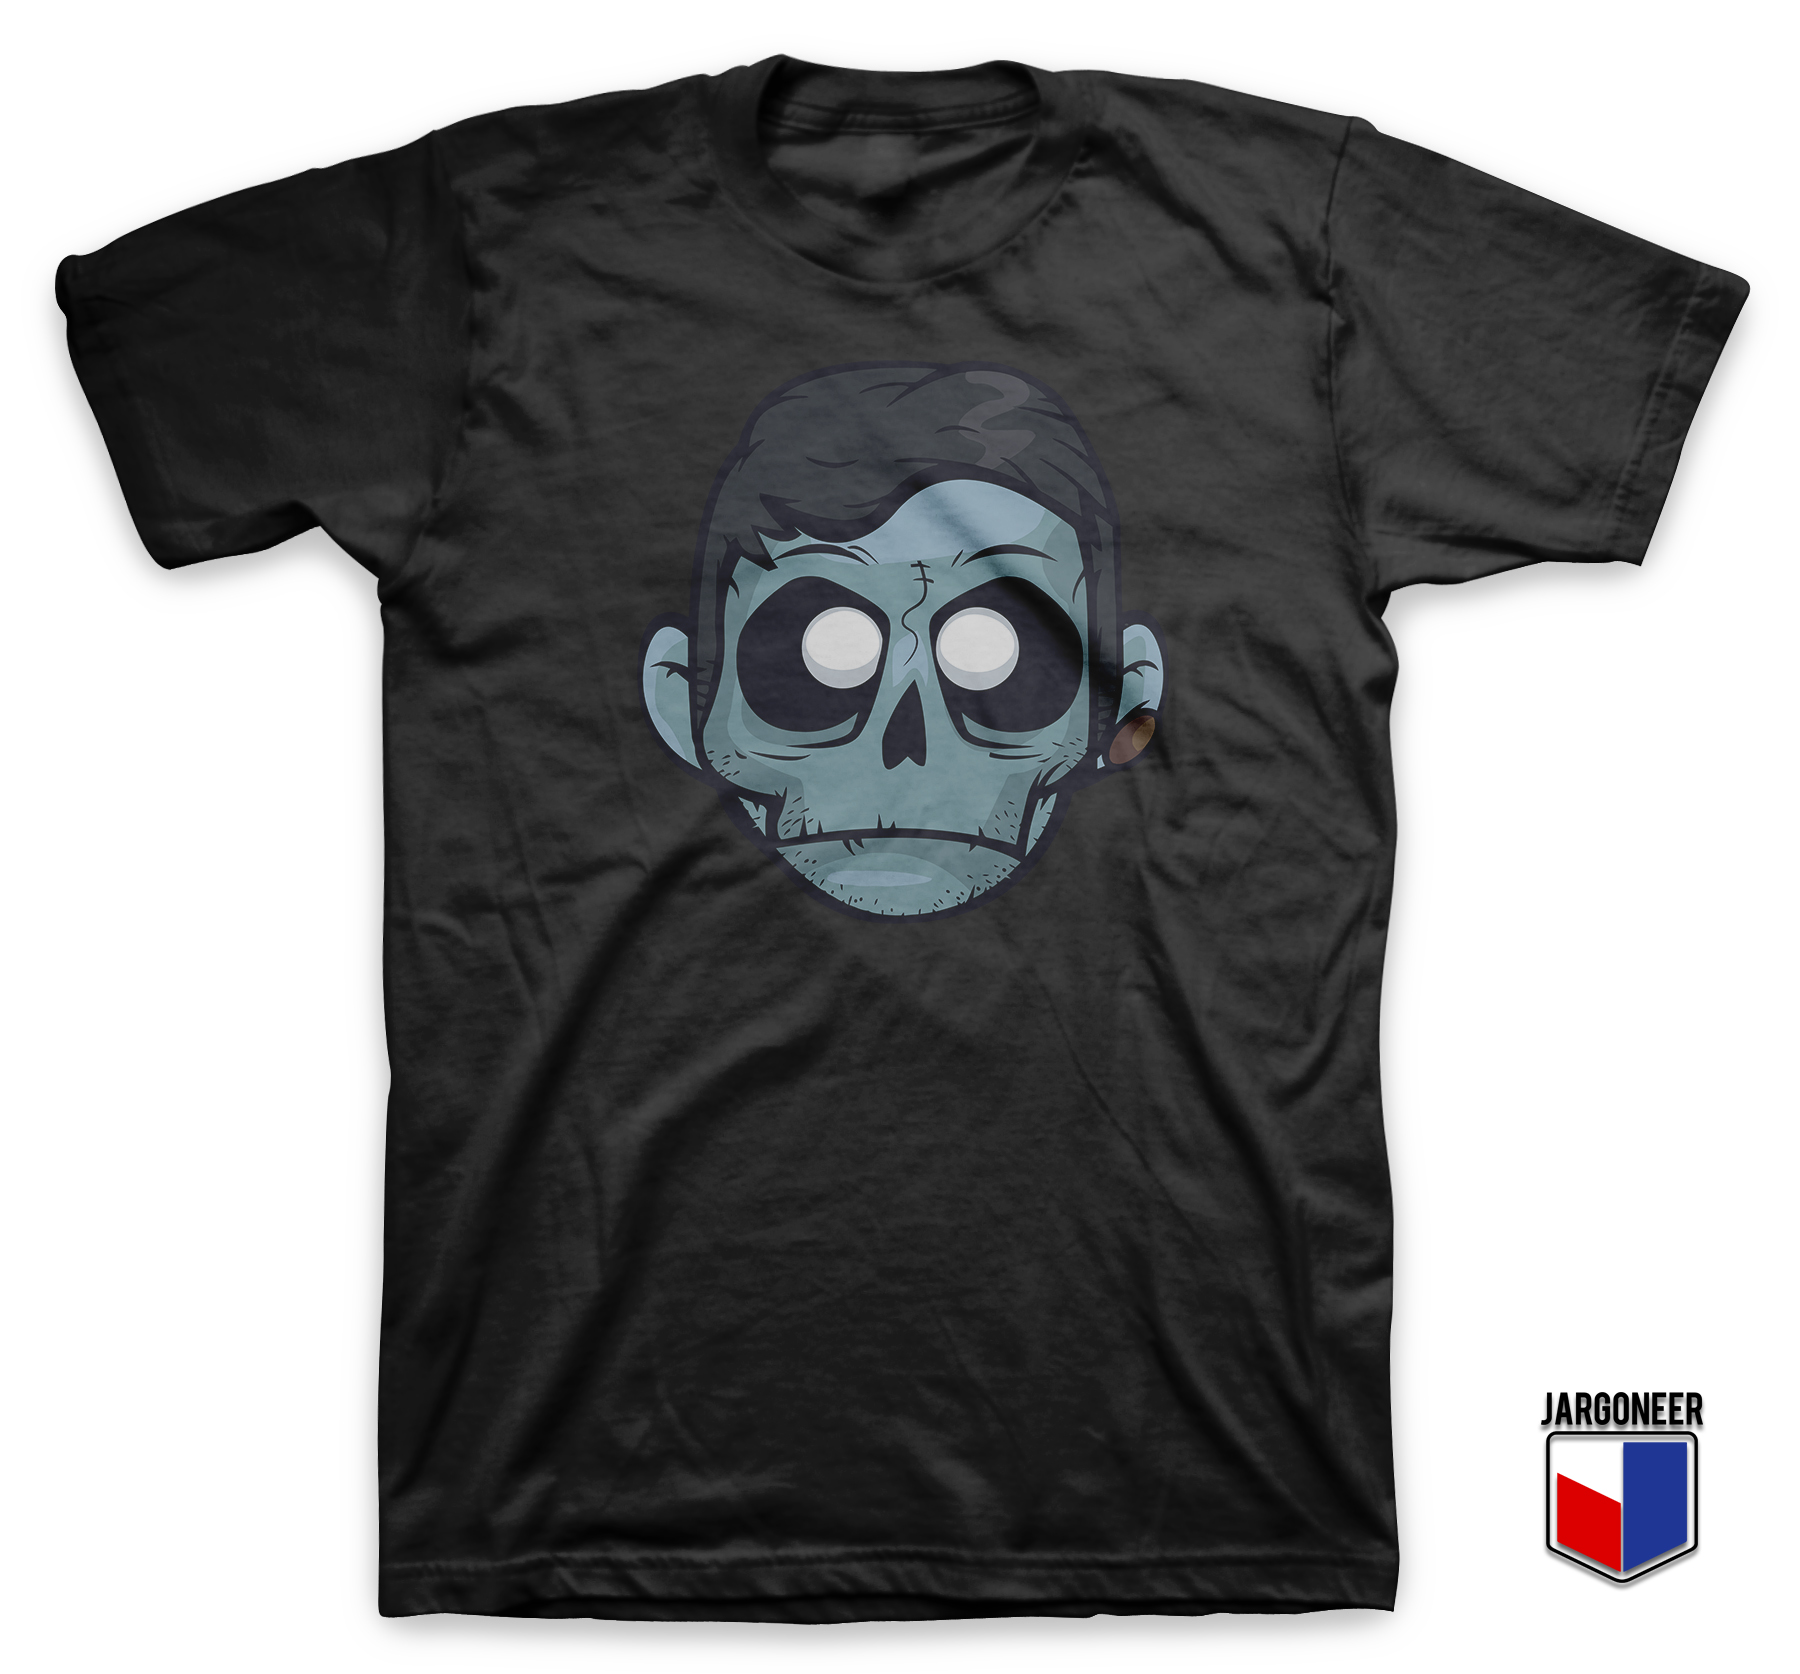 The Zombie Boy Black T Shirt - Shop Unique Graphic Cool Shirt Designs